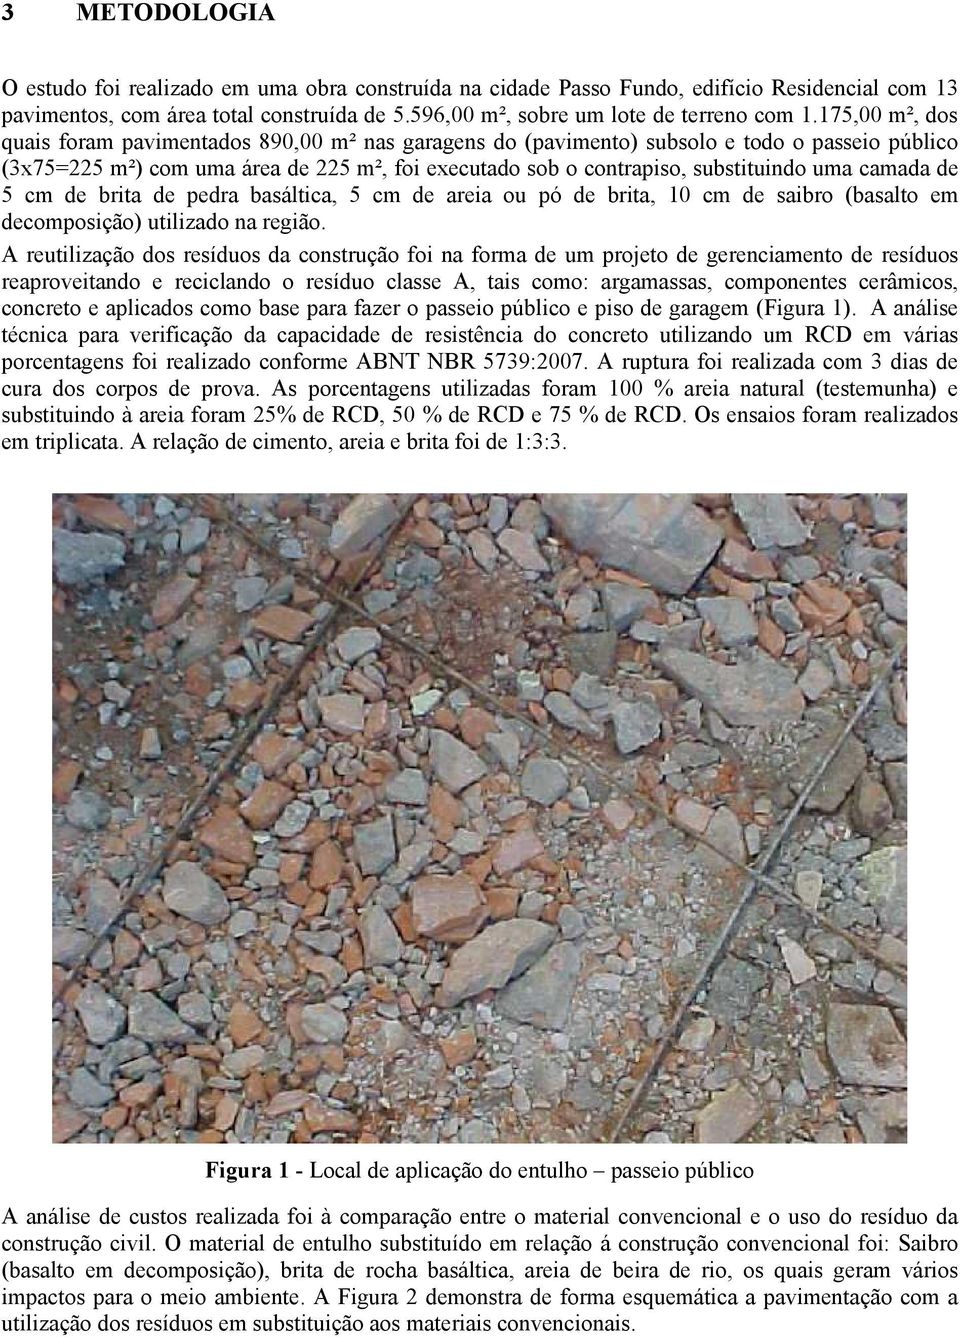 camada de 5 cm de brita de pedra basáltica, 5 cm de areia ou pó de brita, 10 cm de saibro (basalto em decomposição) utilizado na região.